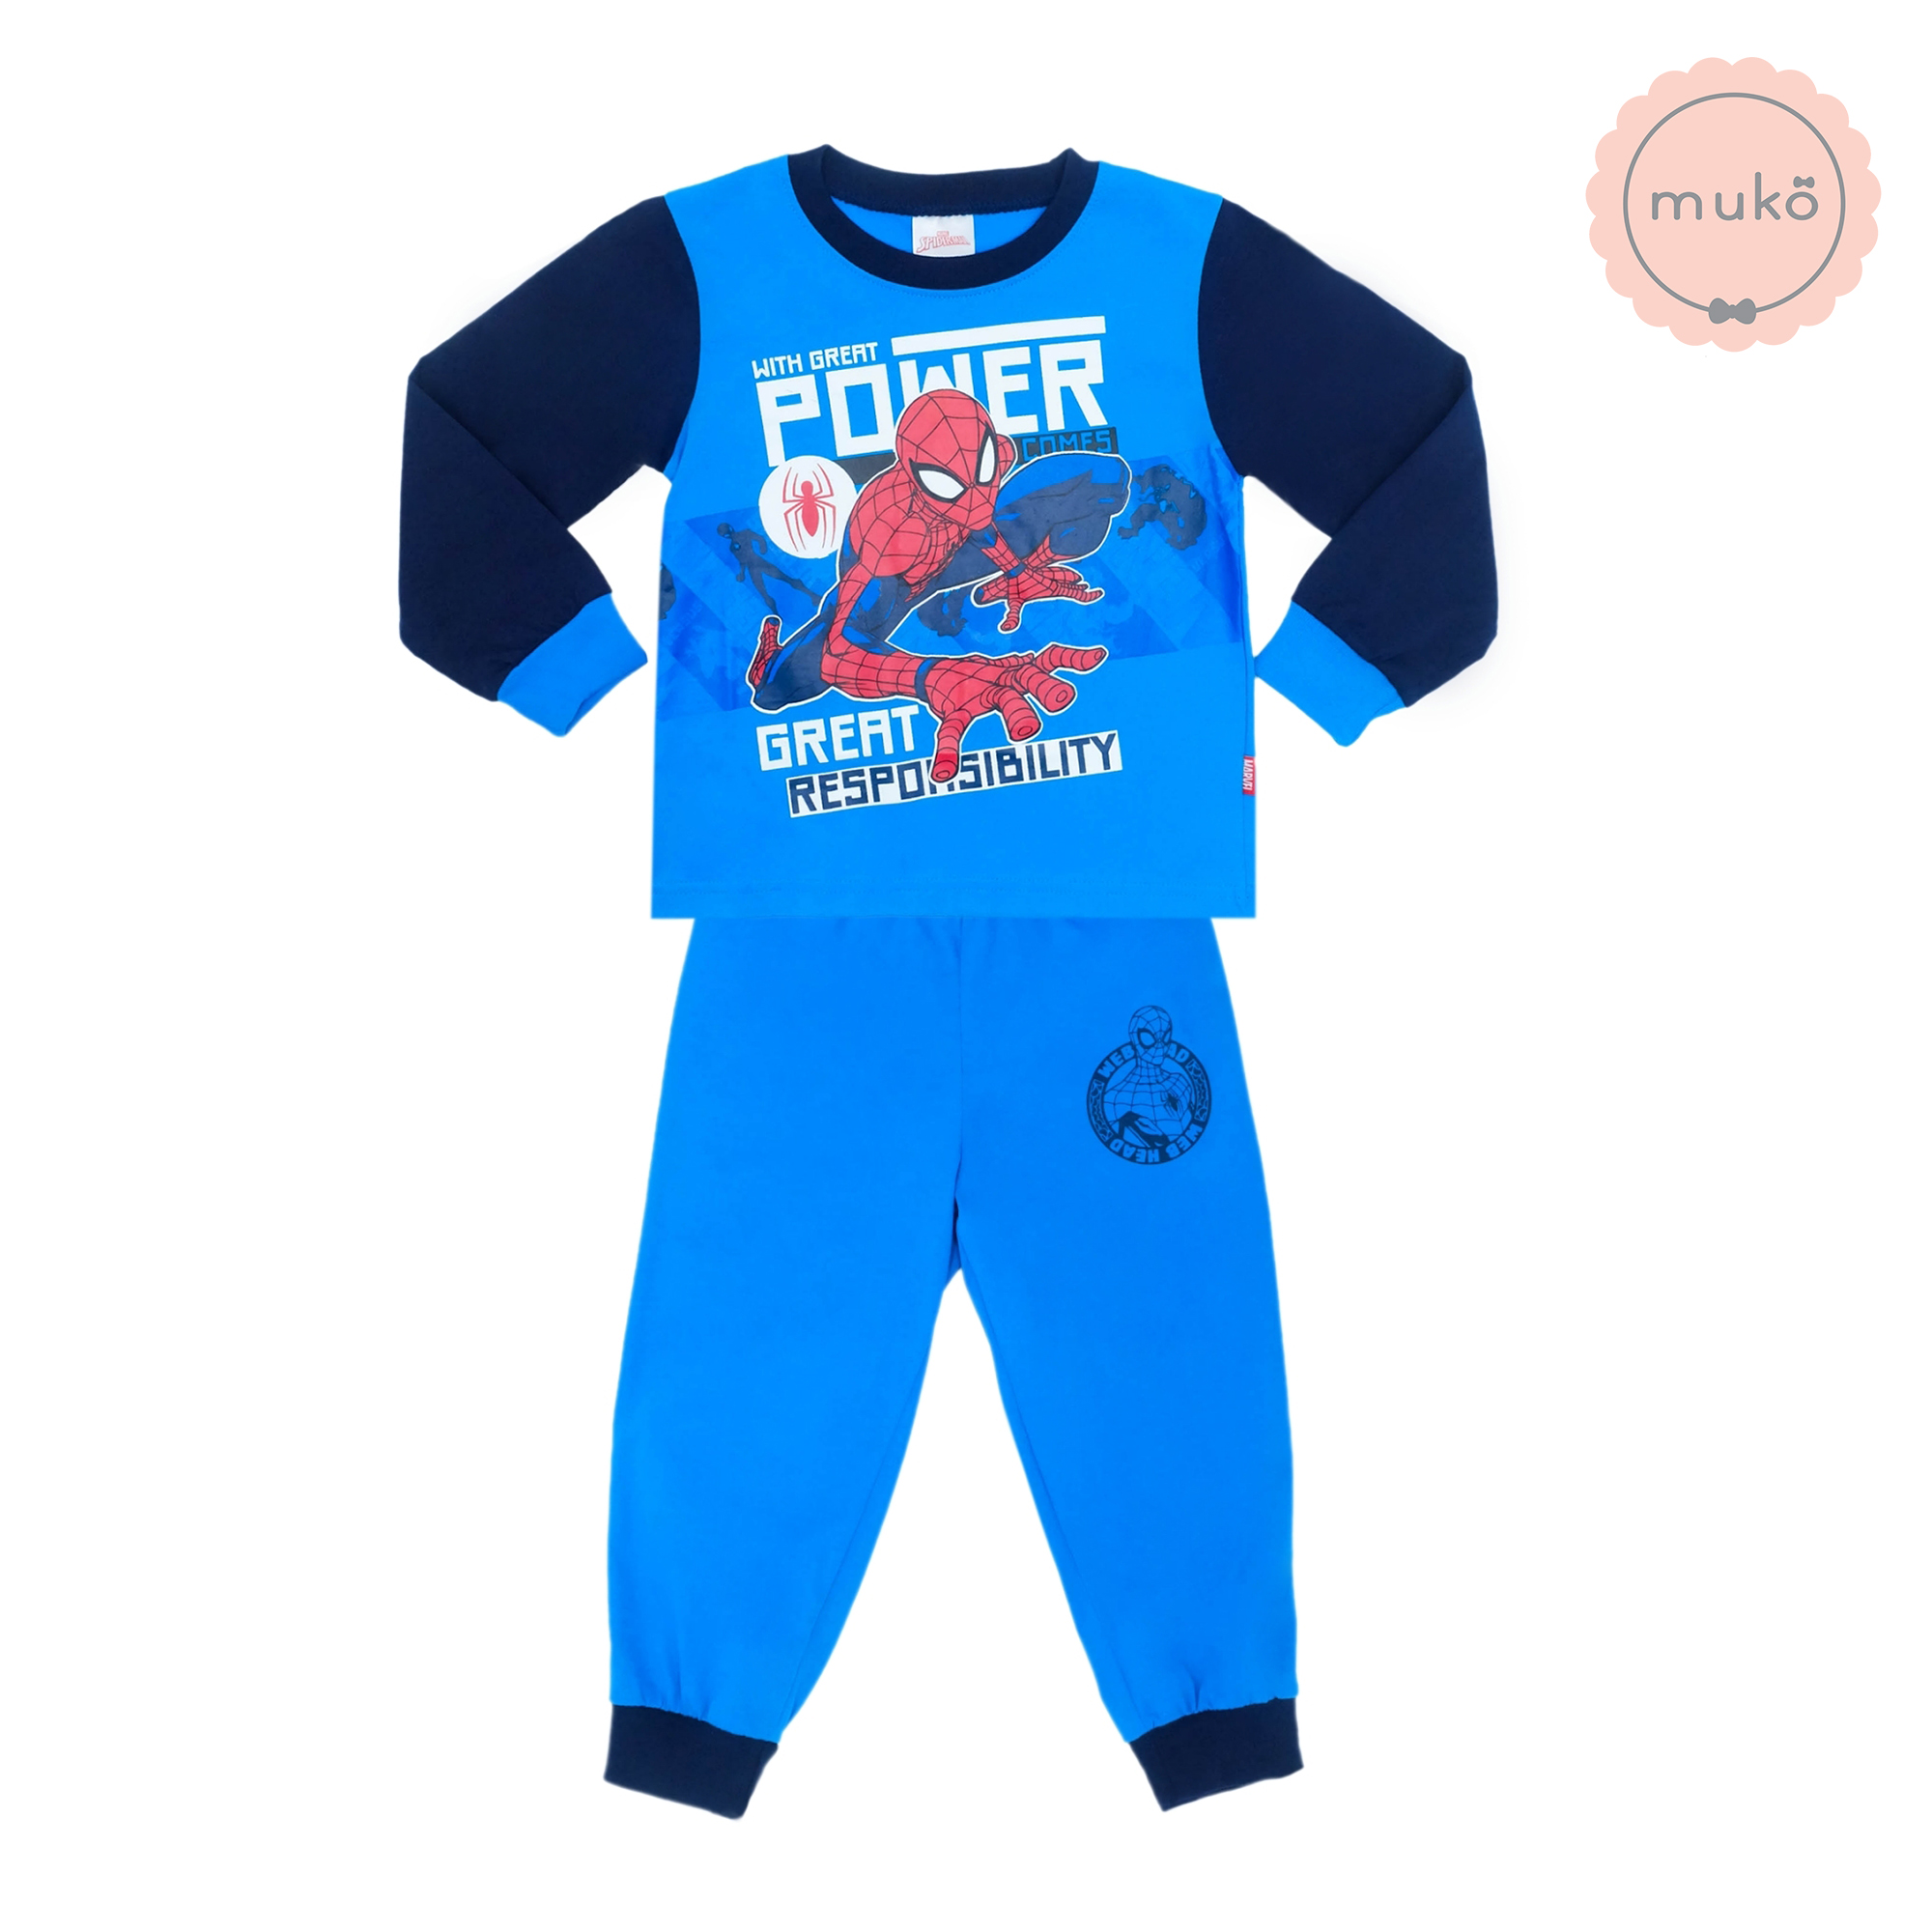 ชุดเด็ก 1-2 ขวบ แขนยาว-ขายาว (Size 2) DMS127-04-3-Blue 2 ลาย สไปร์เดอร์แมน Spiderman สีฟ้า